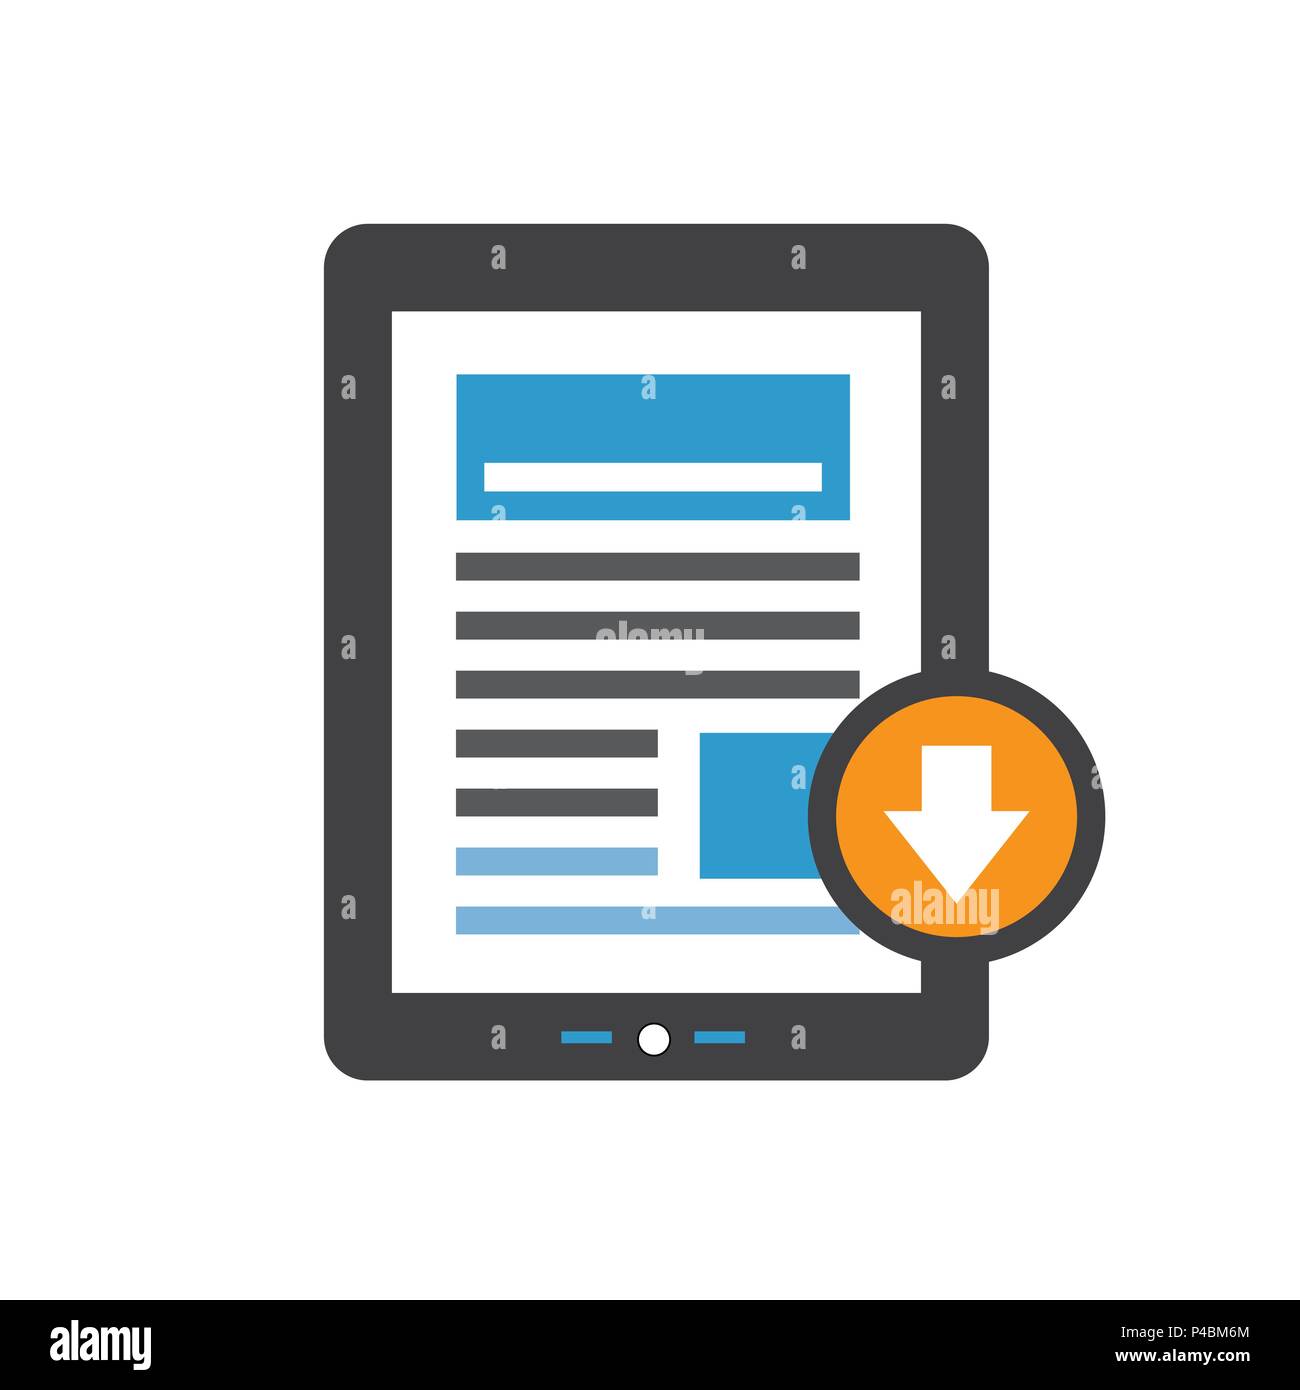 Whitepaper oder Ebook CTA w Abdeckung und Download Button zum kostenlosen digitalen Download-Call für Marketing Aktion Stock Vektor